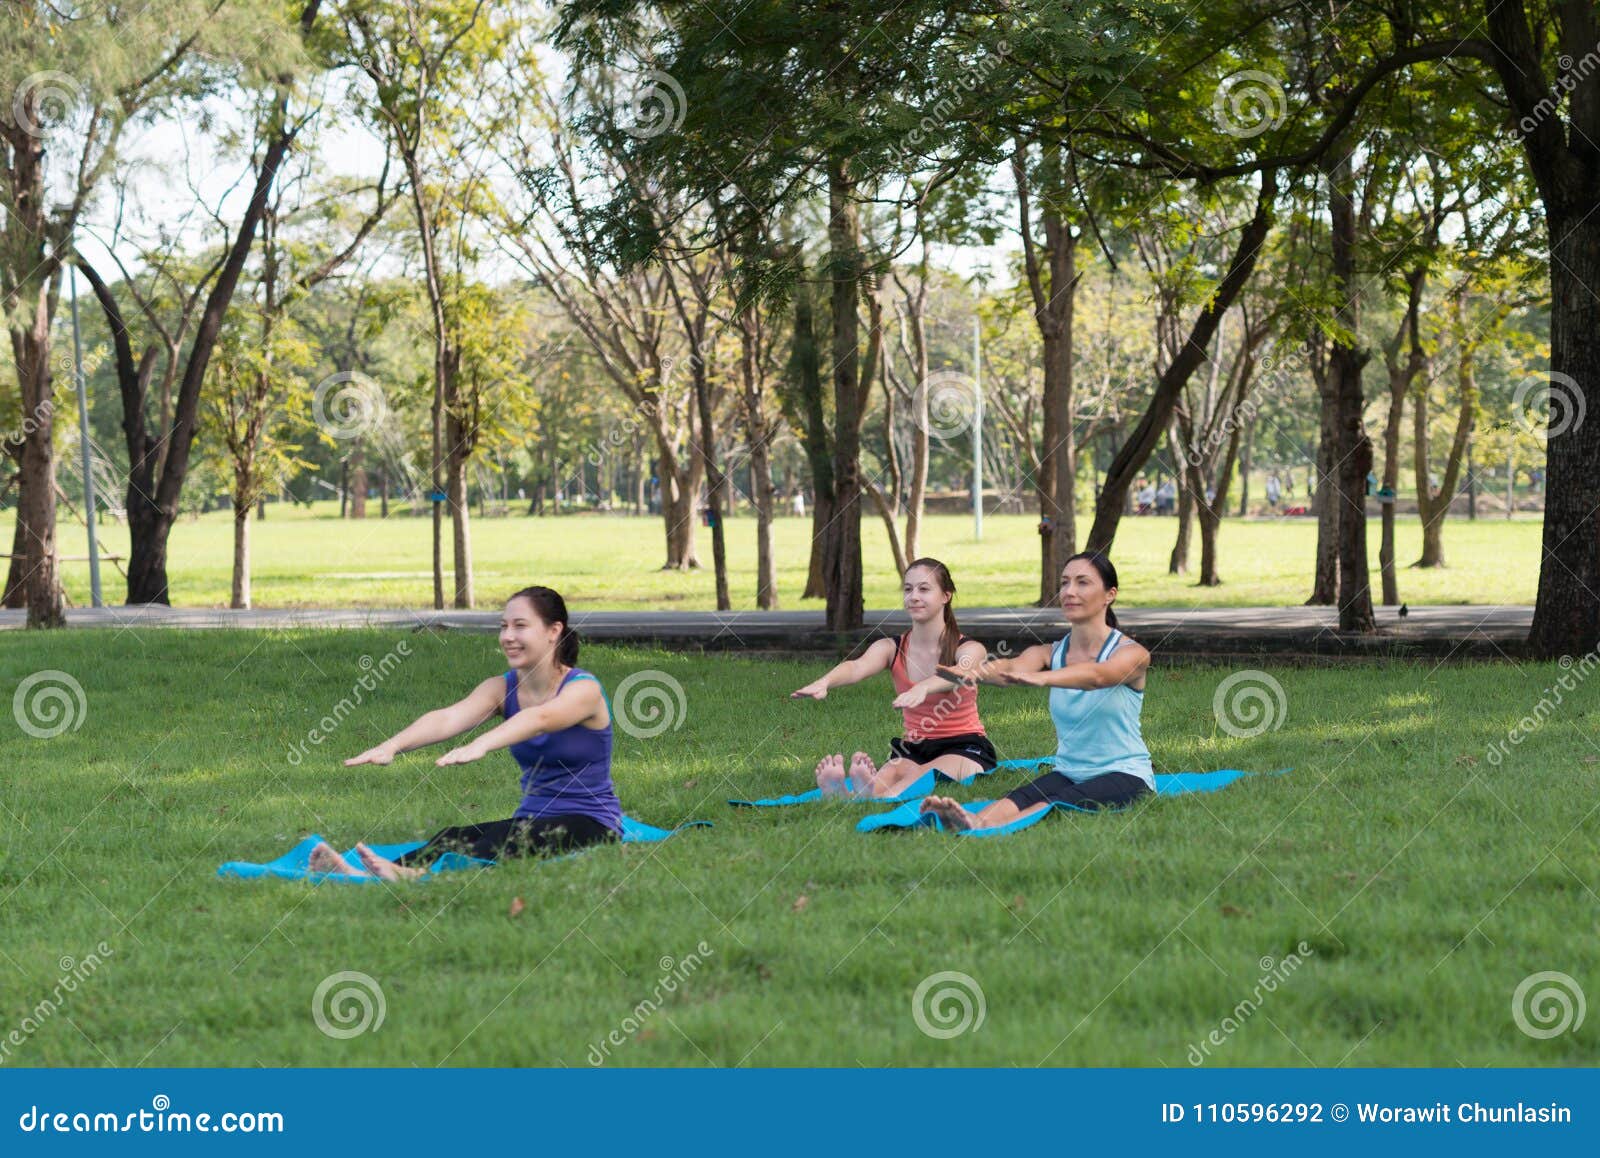 Yoga de pratique de famille en parc extérieur Concept de l sain. Yoga de pratique de famille en parc extérieur Concept de mode de vie et de relaxation sains